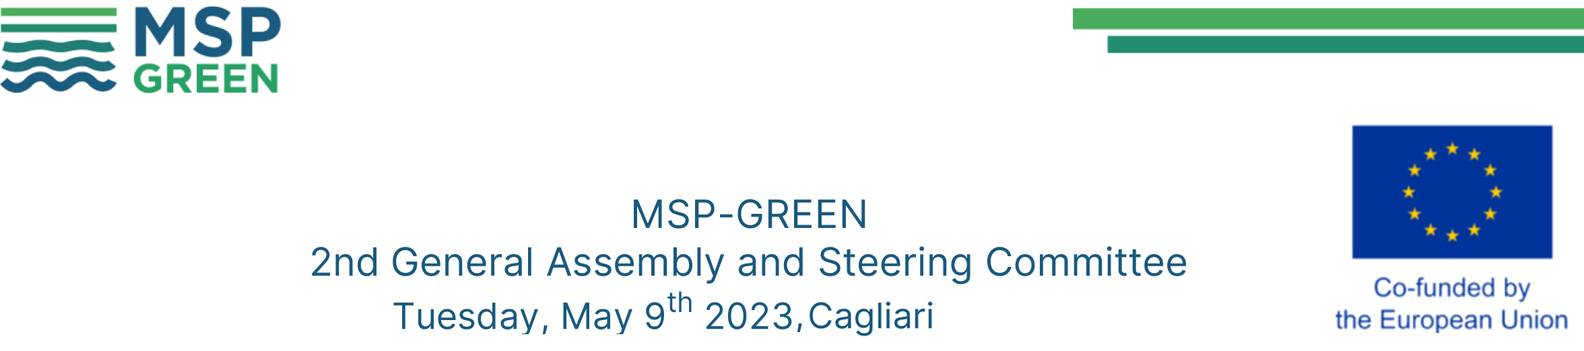 MSP GREEN Steering committee 05 2023